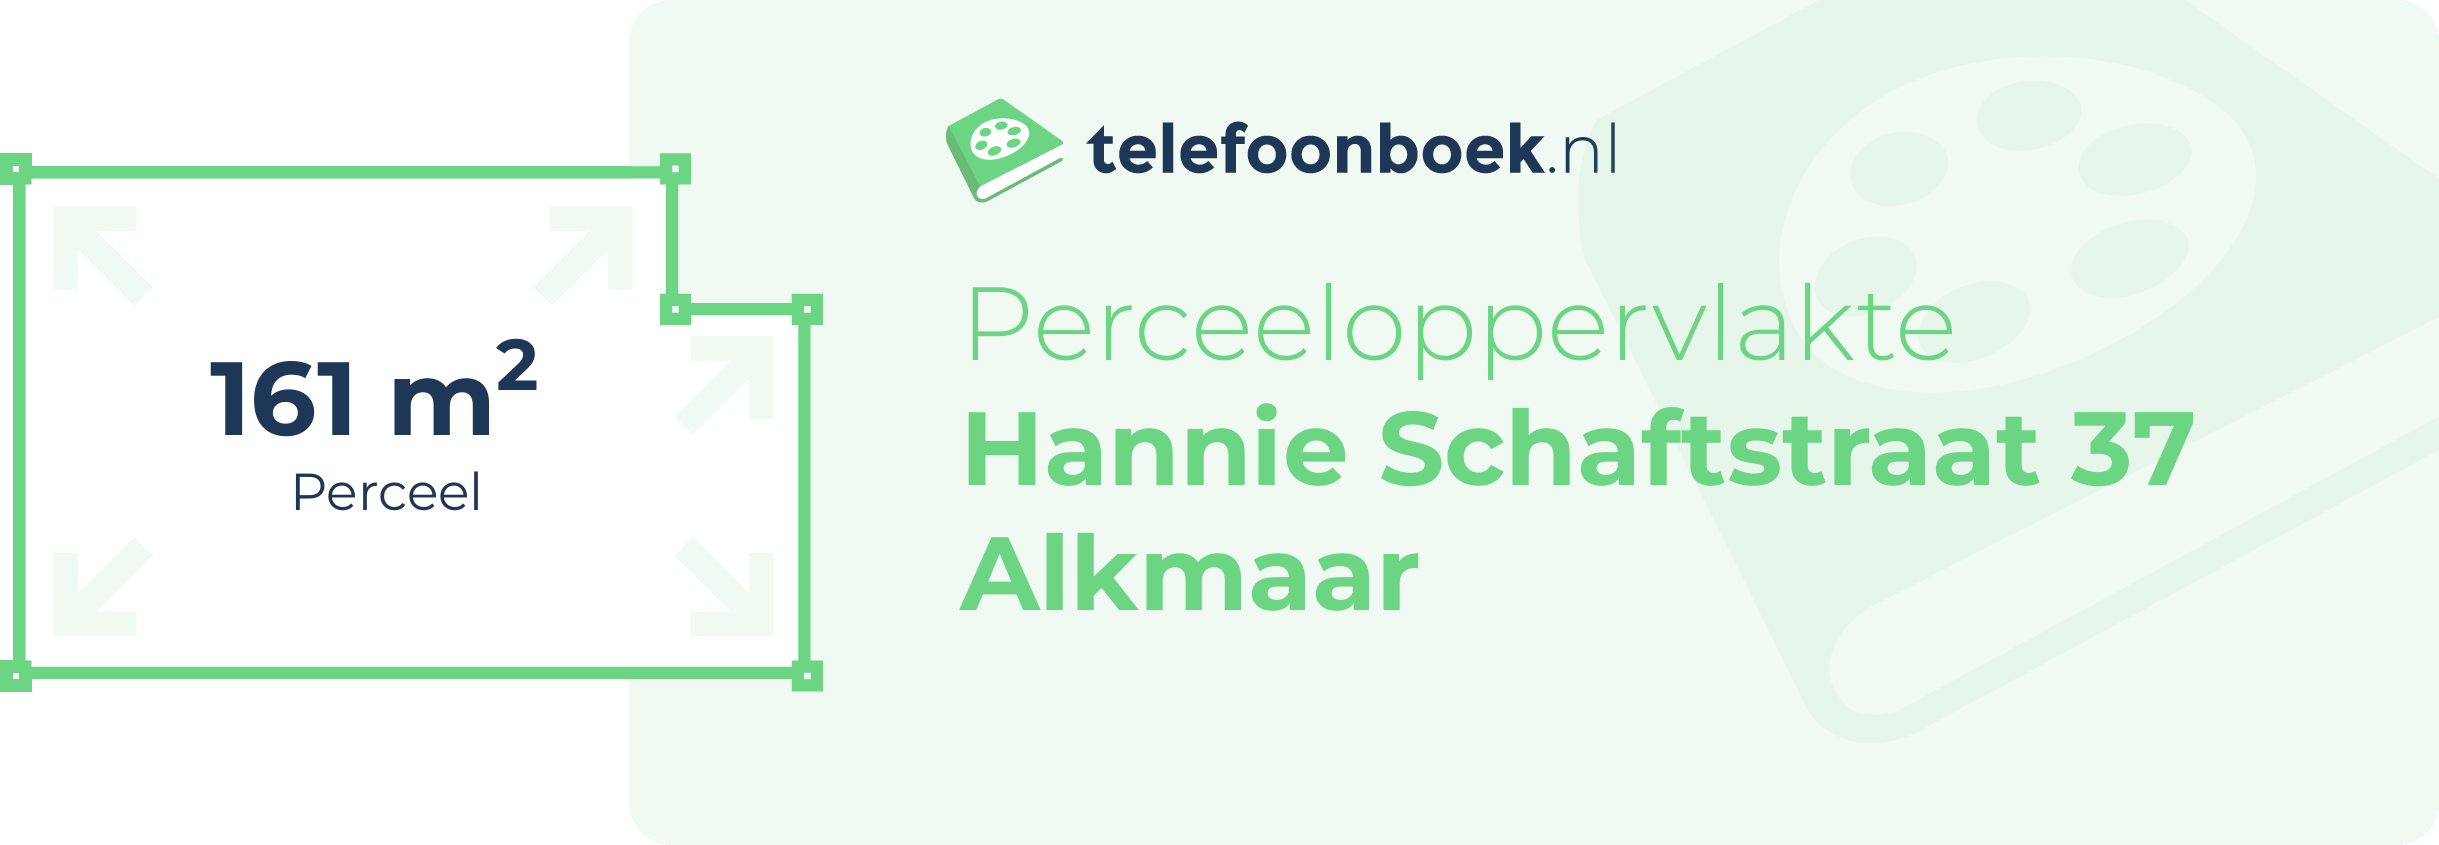 Perceeloppervlakte Hannie Schaftstraat 37 Alkmaar